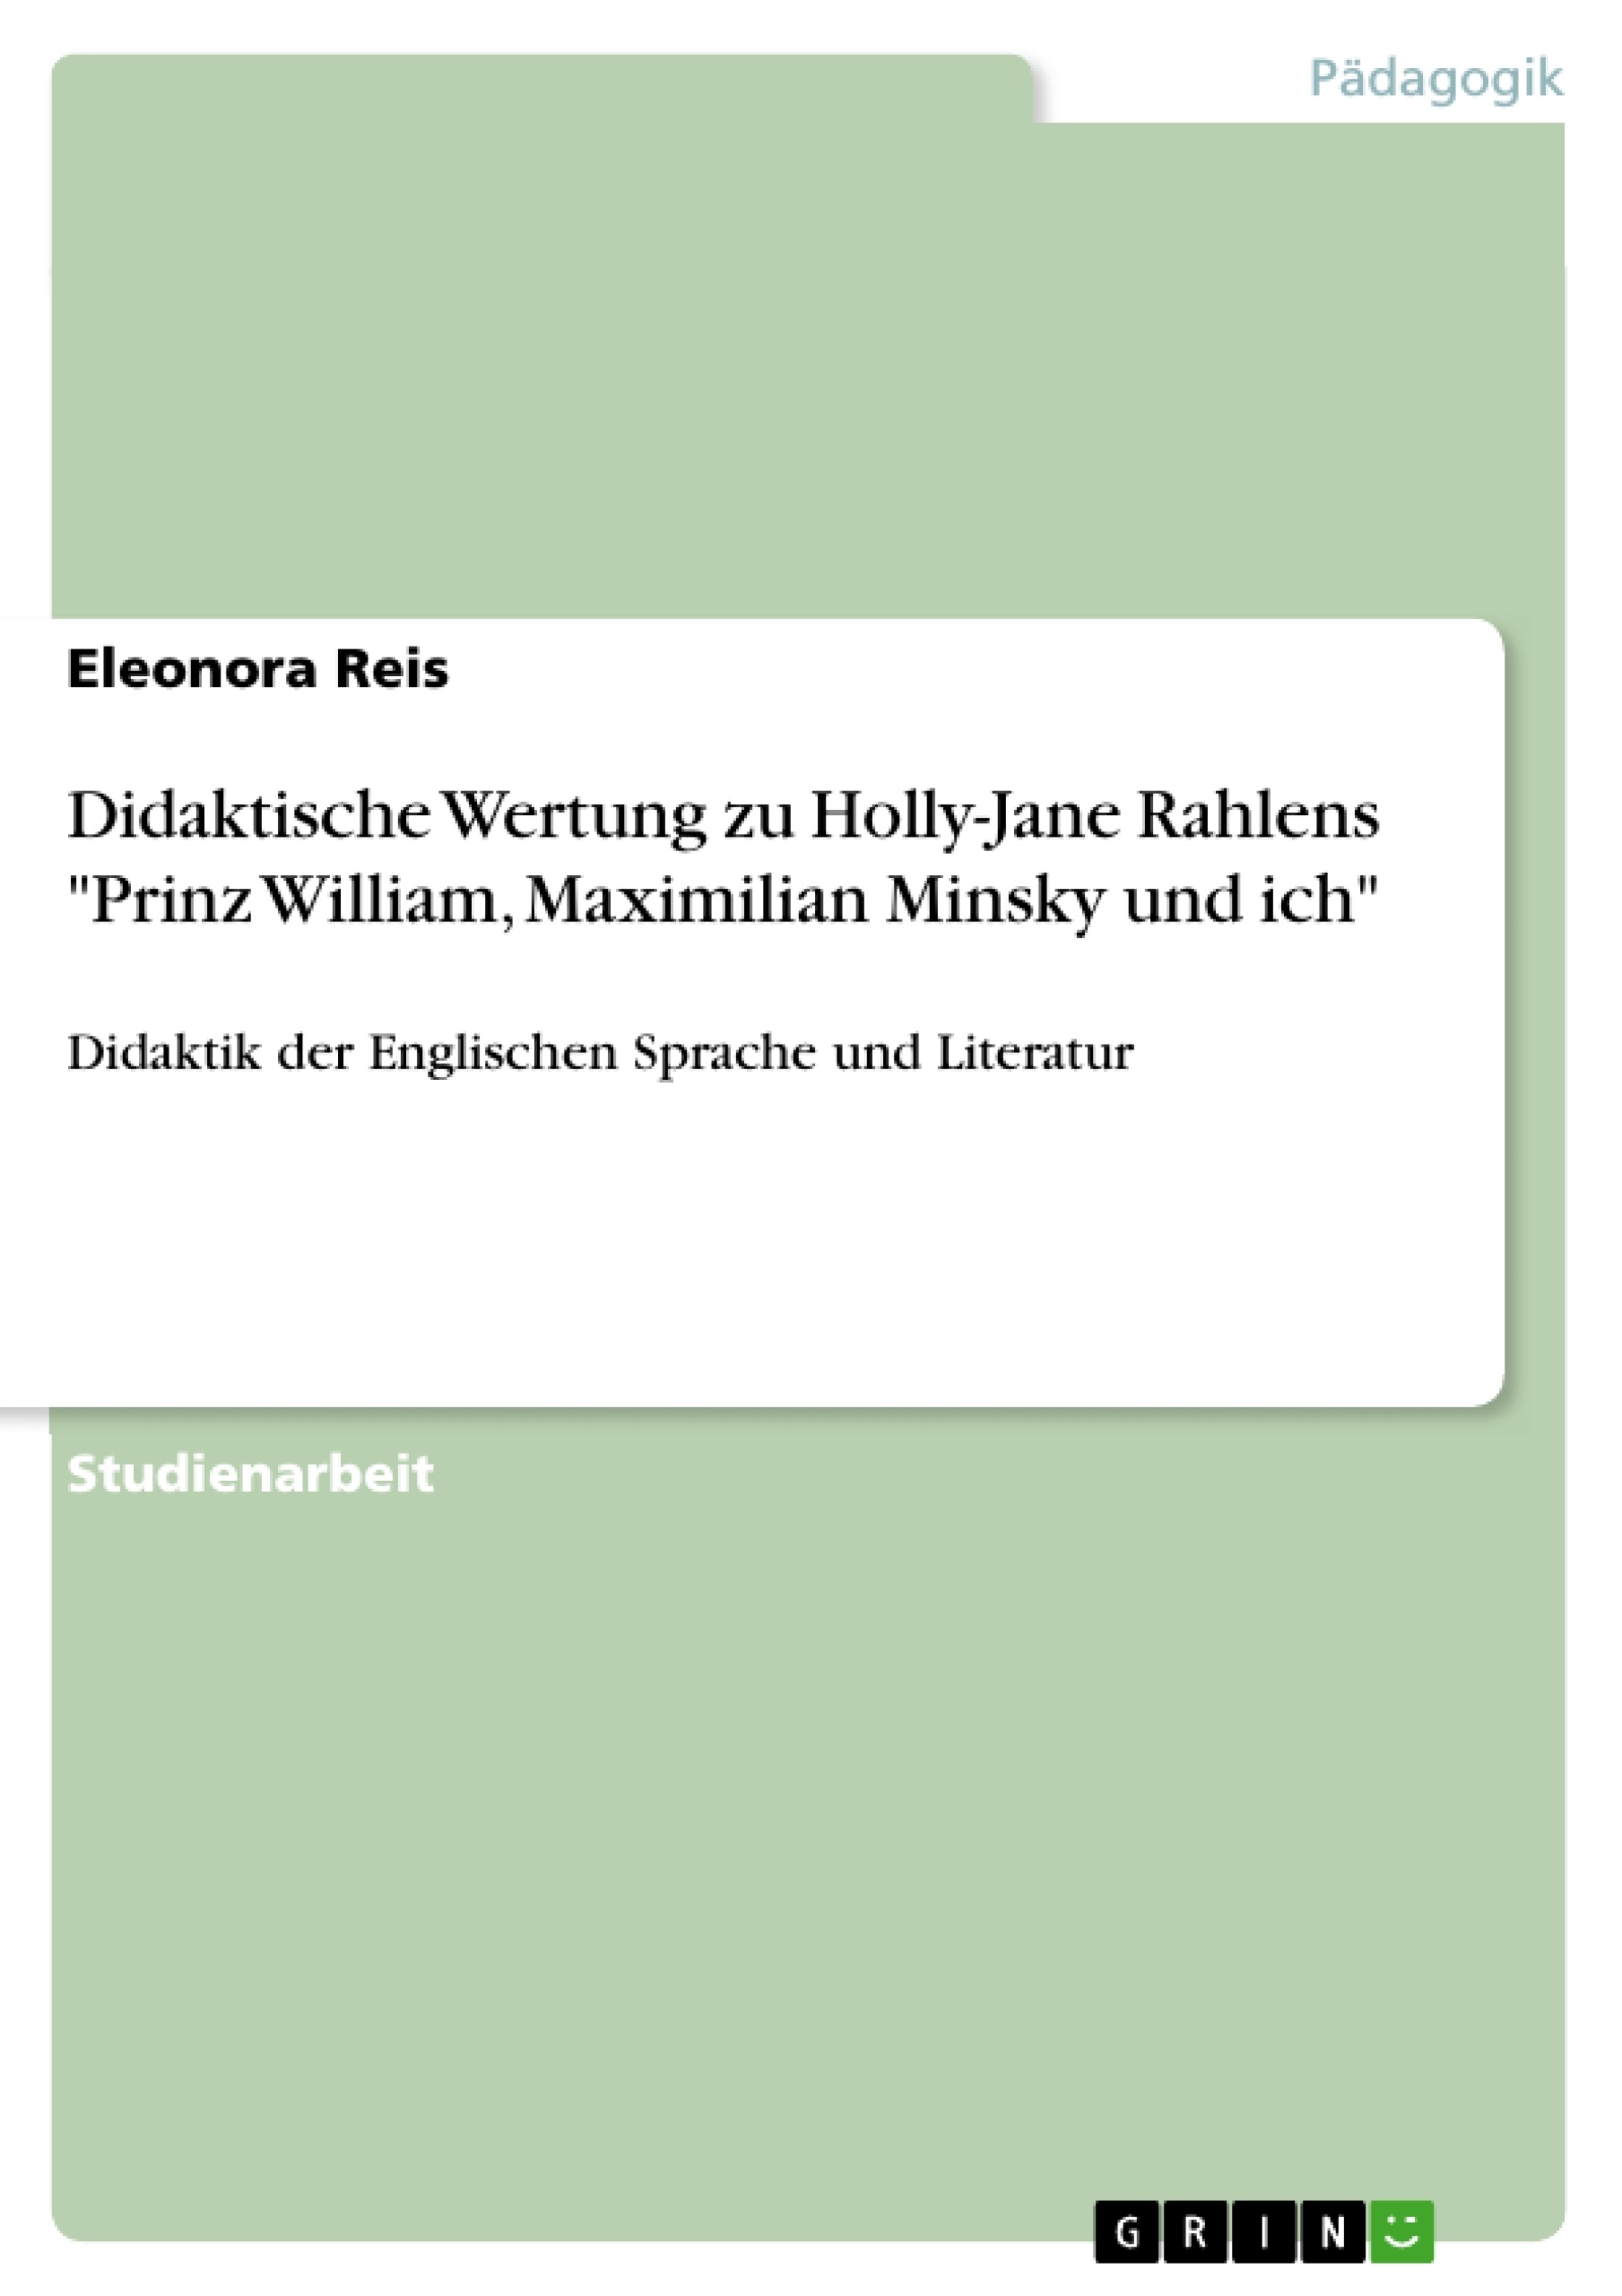 Título: Didaktische Wertung zu Holly-Jane Rahlens "Prinz William, Maximilian Minsky und ich"